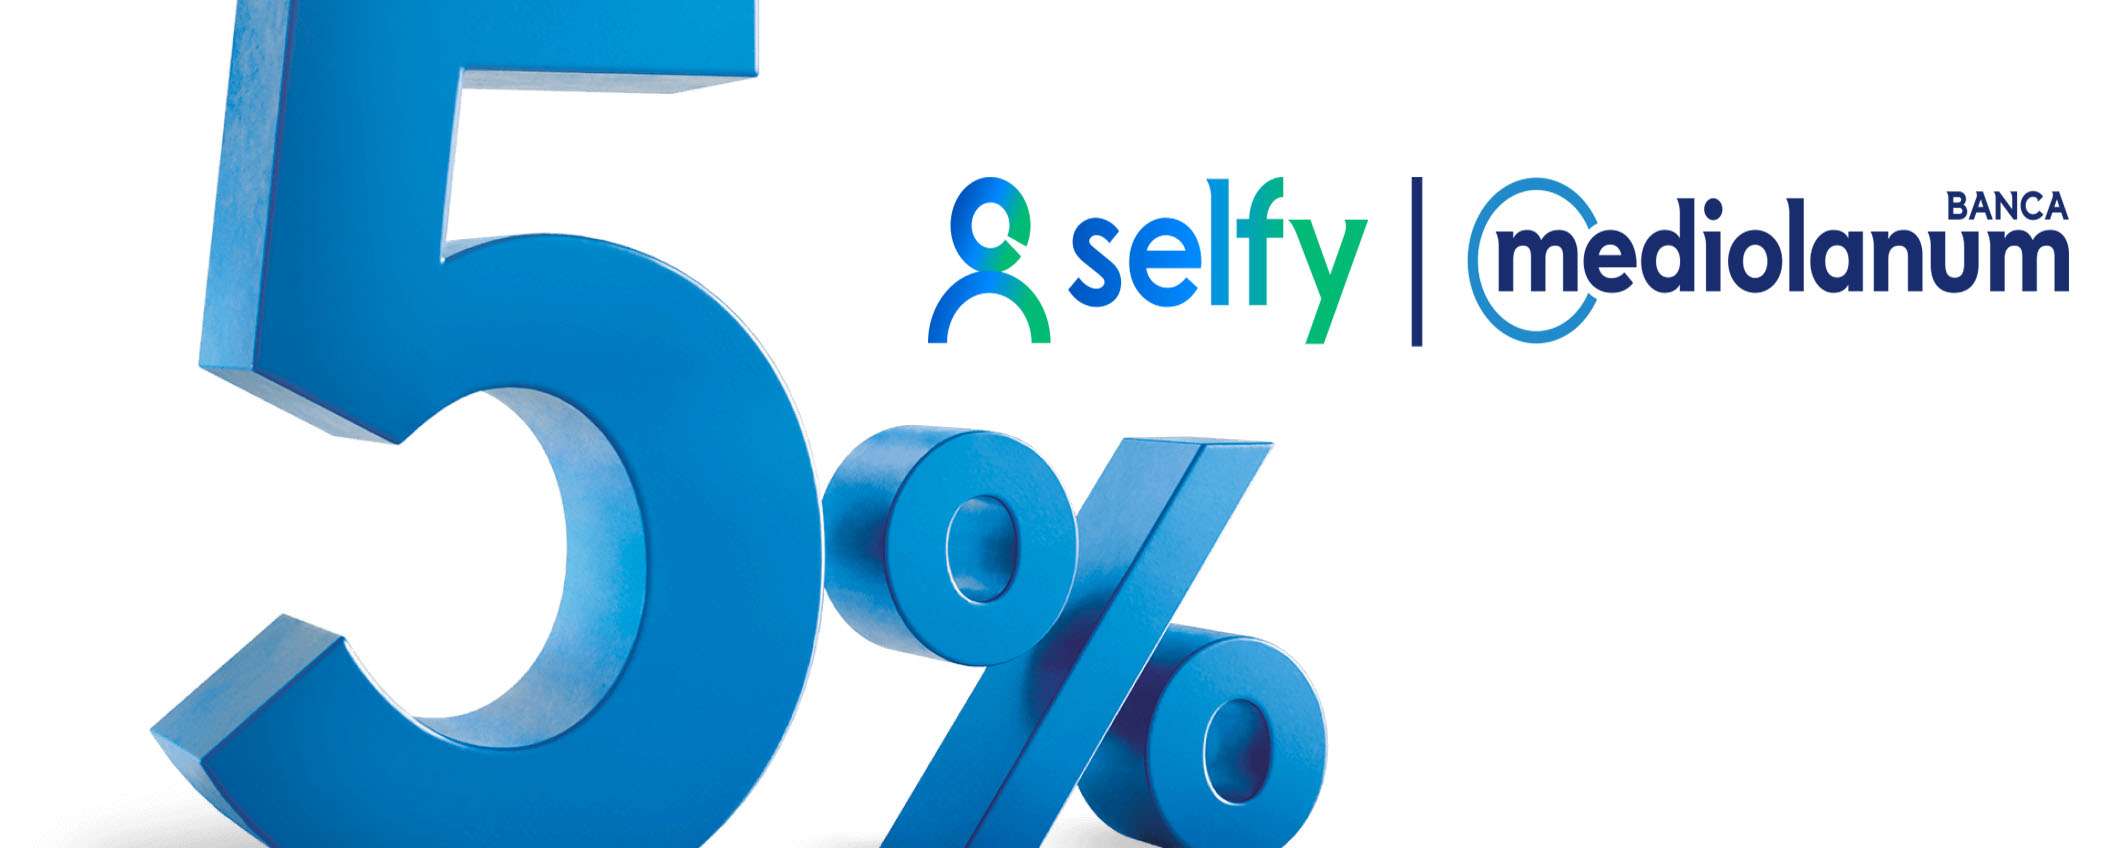 SelfyConto: 5% di interesse se accrediti lo stipendio!